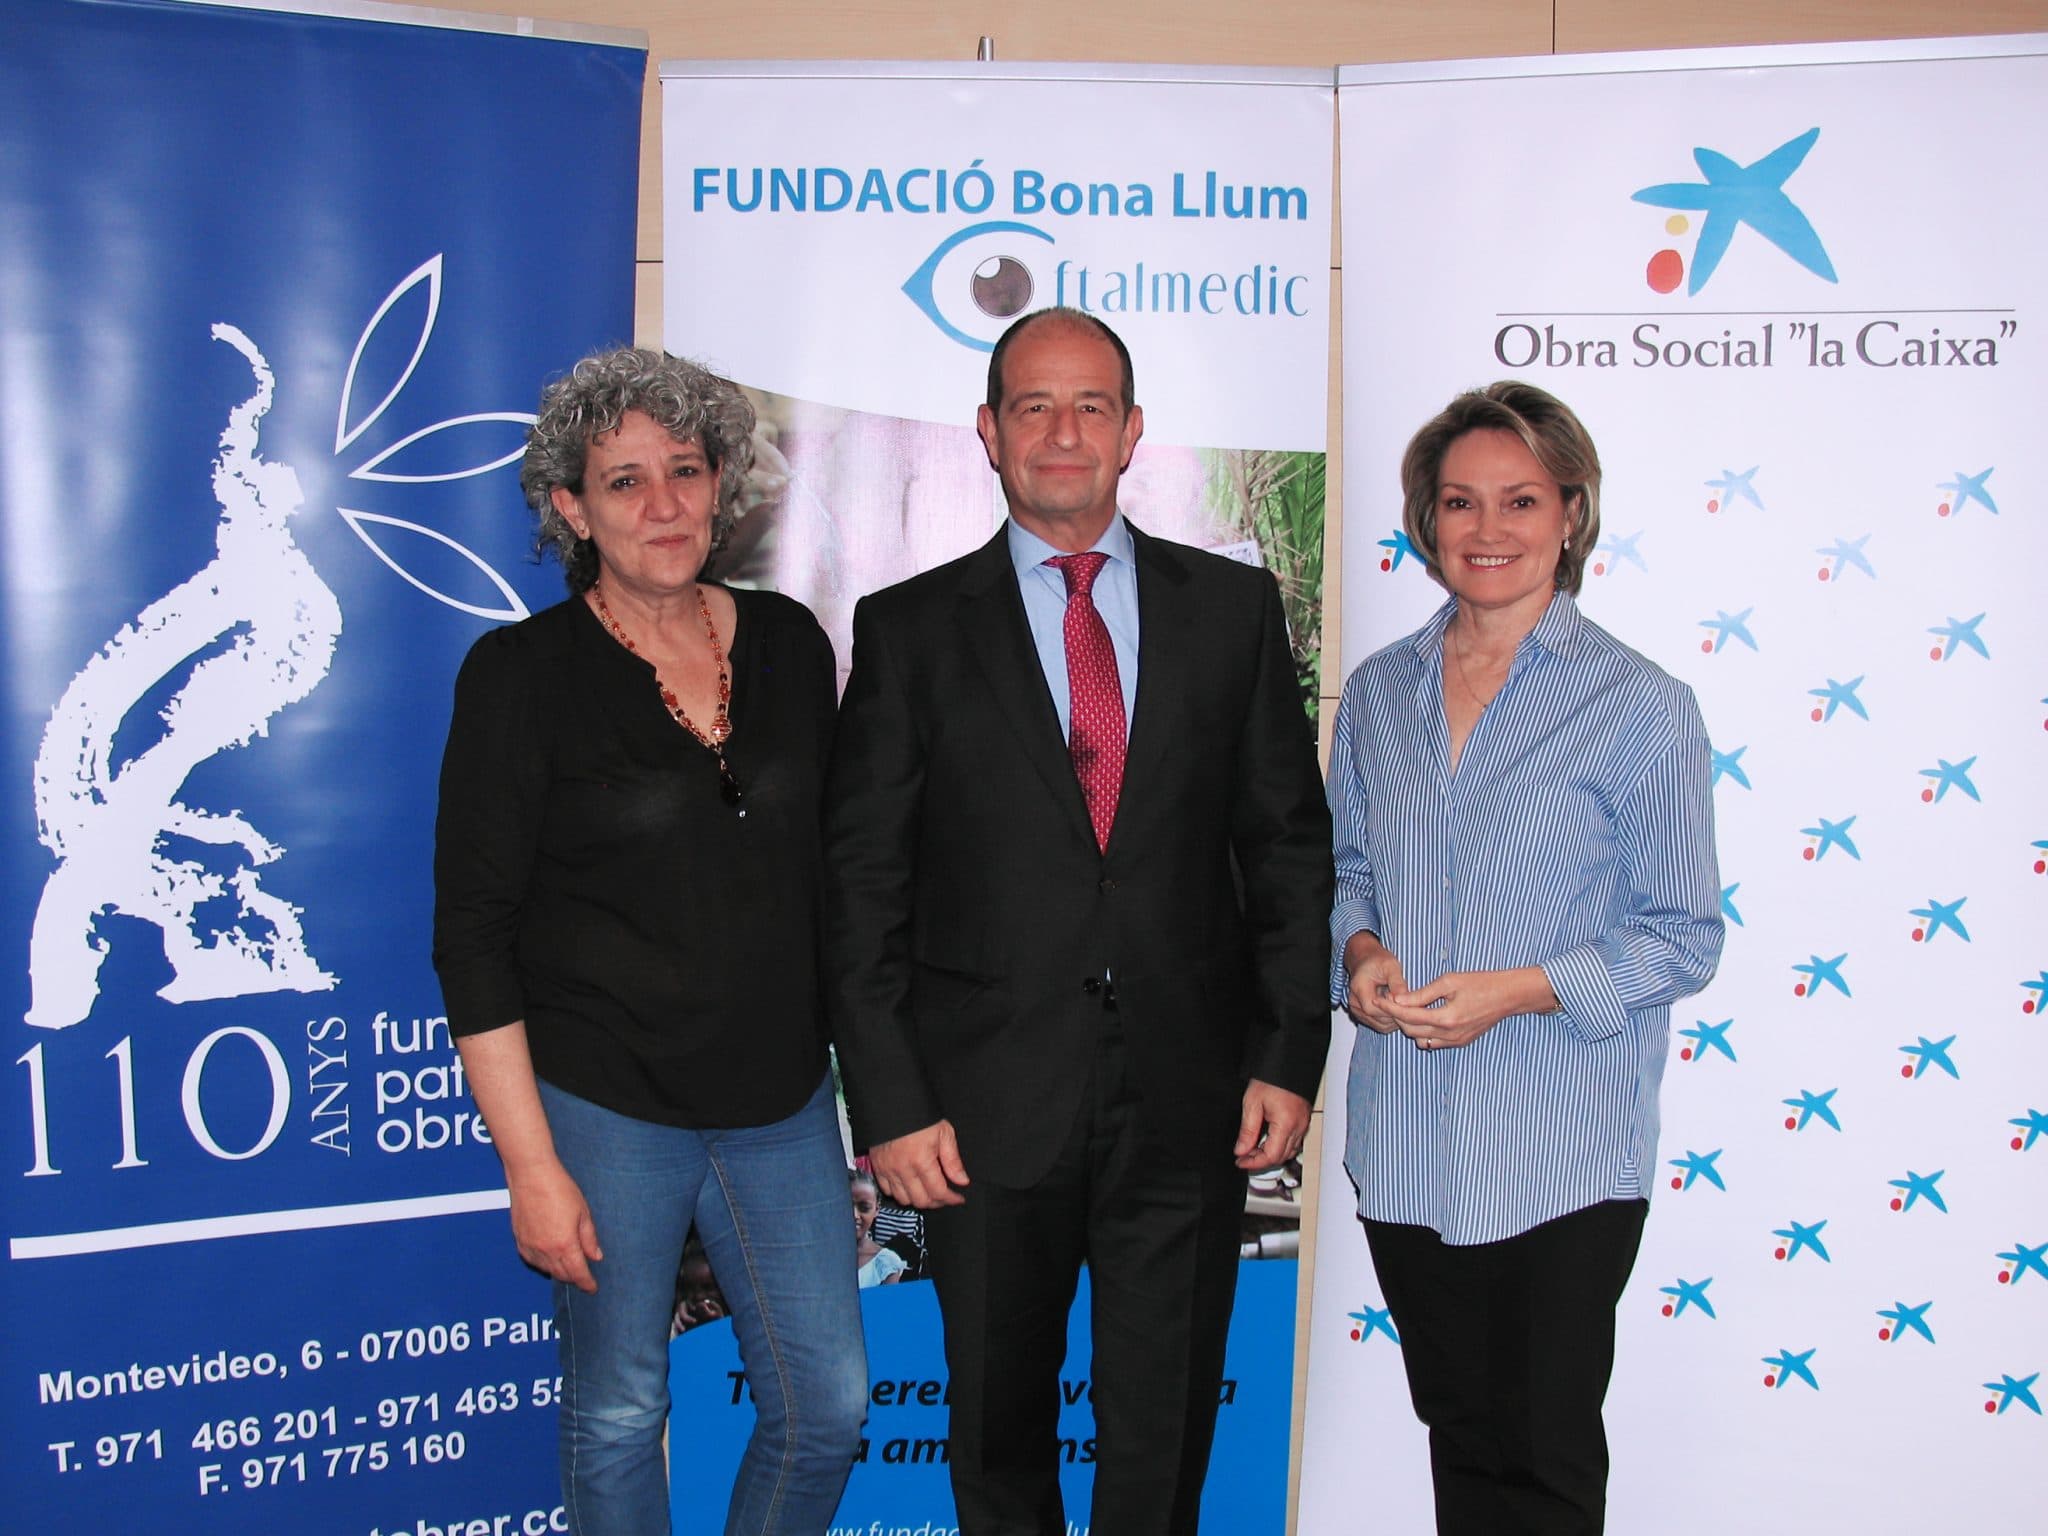 Fundació Bona Llum Oftalmedic ofrecerá revisiones oculares gratuitas a la Fundació Patronat Obrer